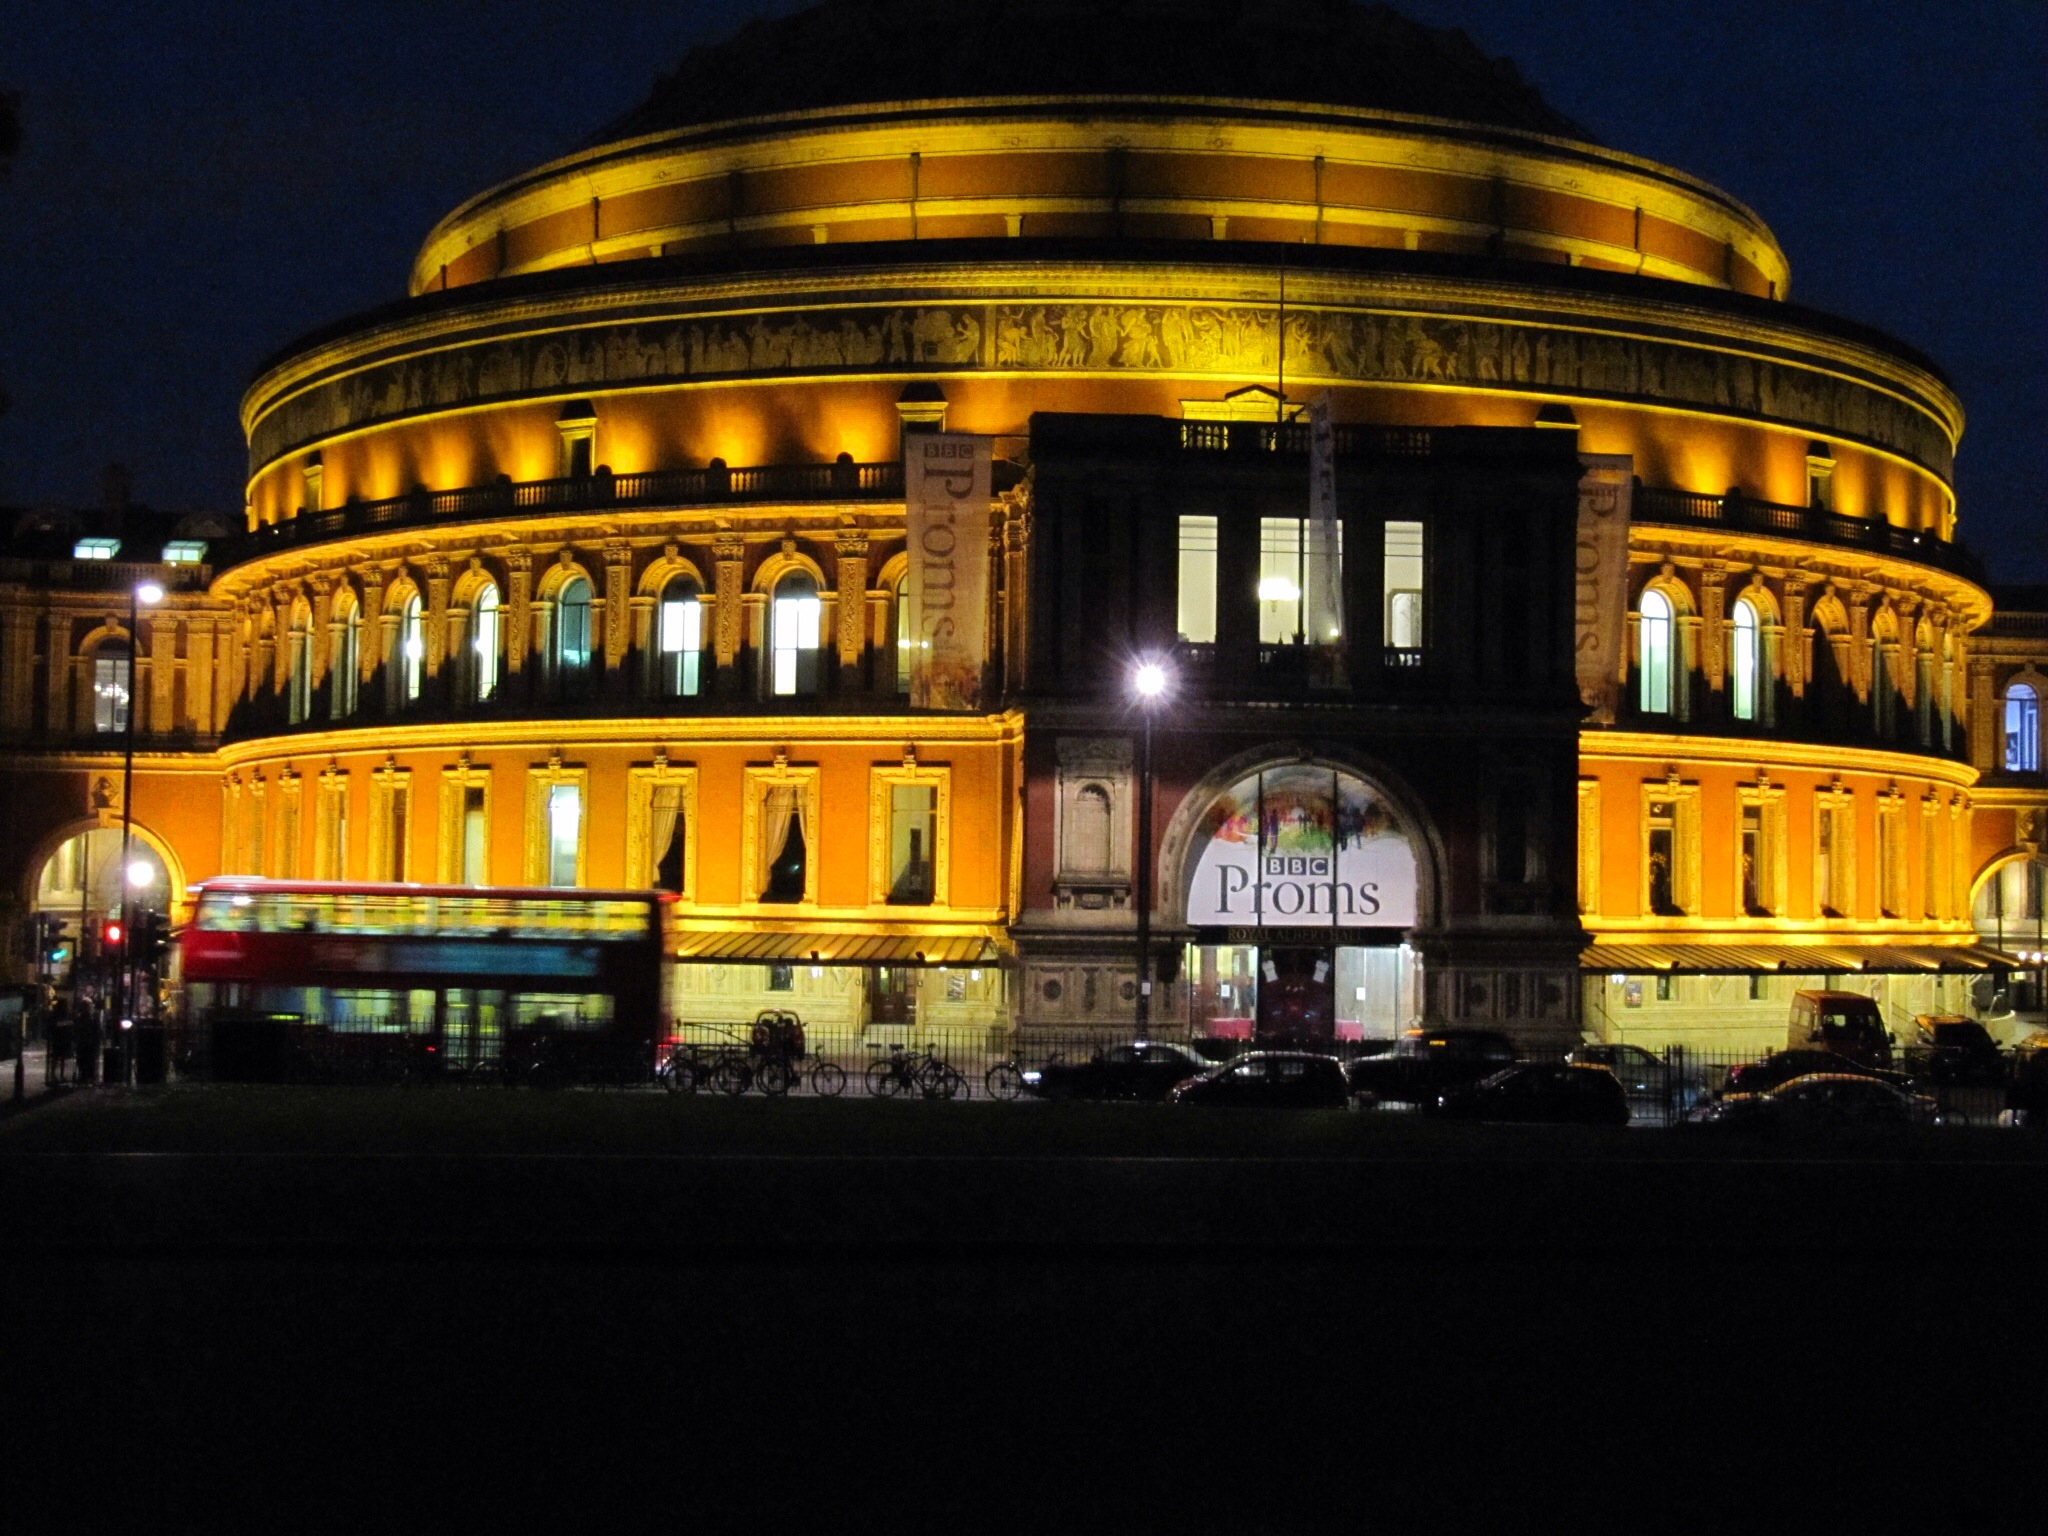 Royal Albert Hall at night.